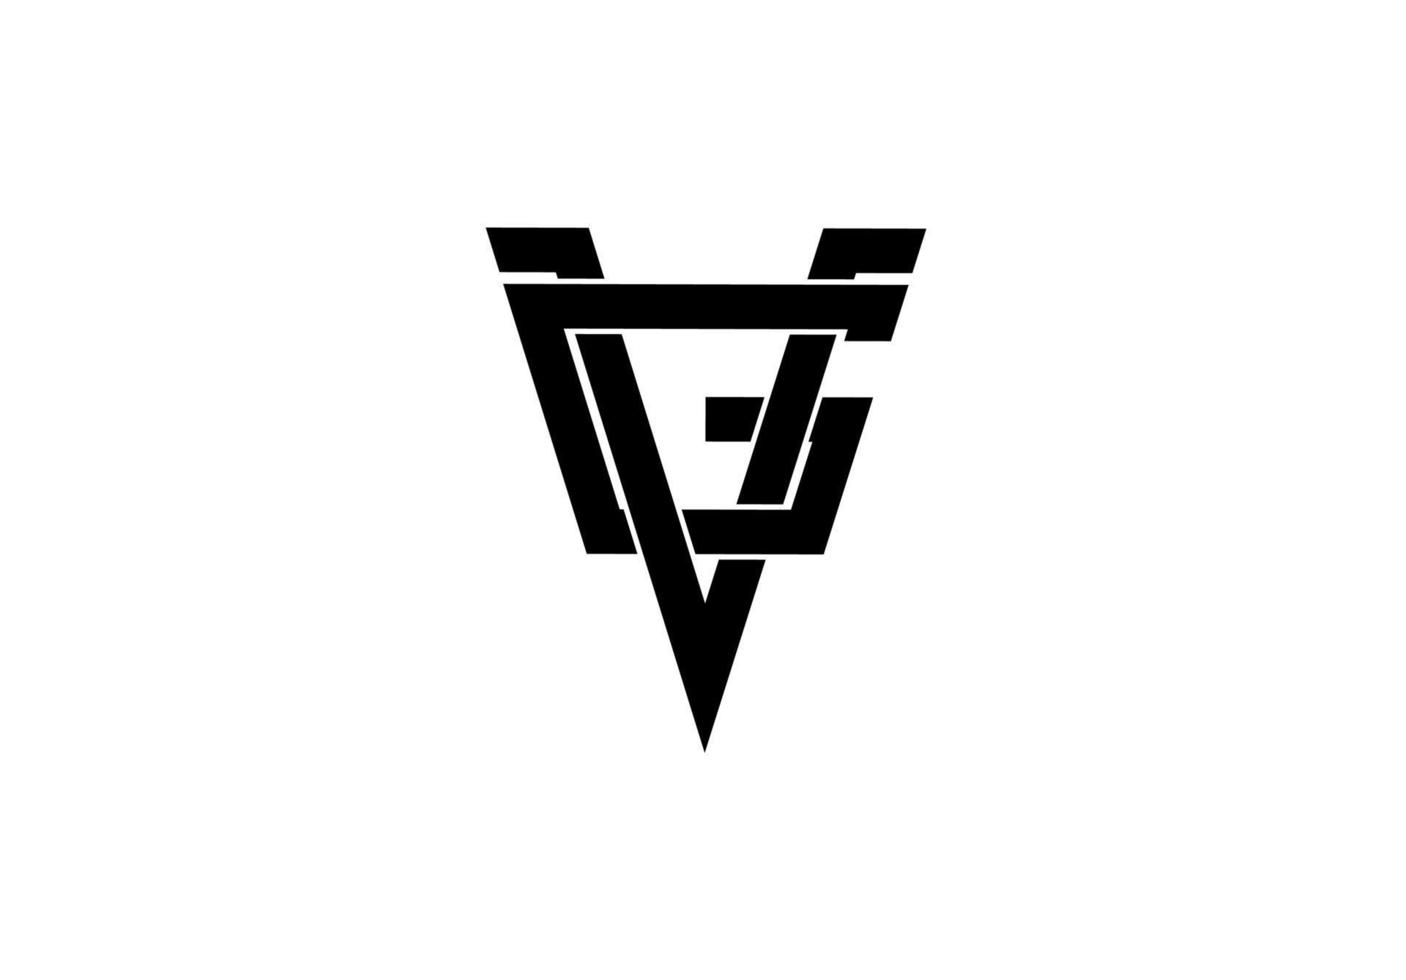 gv vg gv lettre initiale logo isolé sur fond blanc vecteur